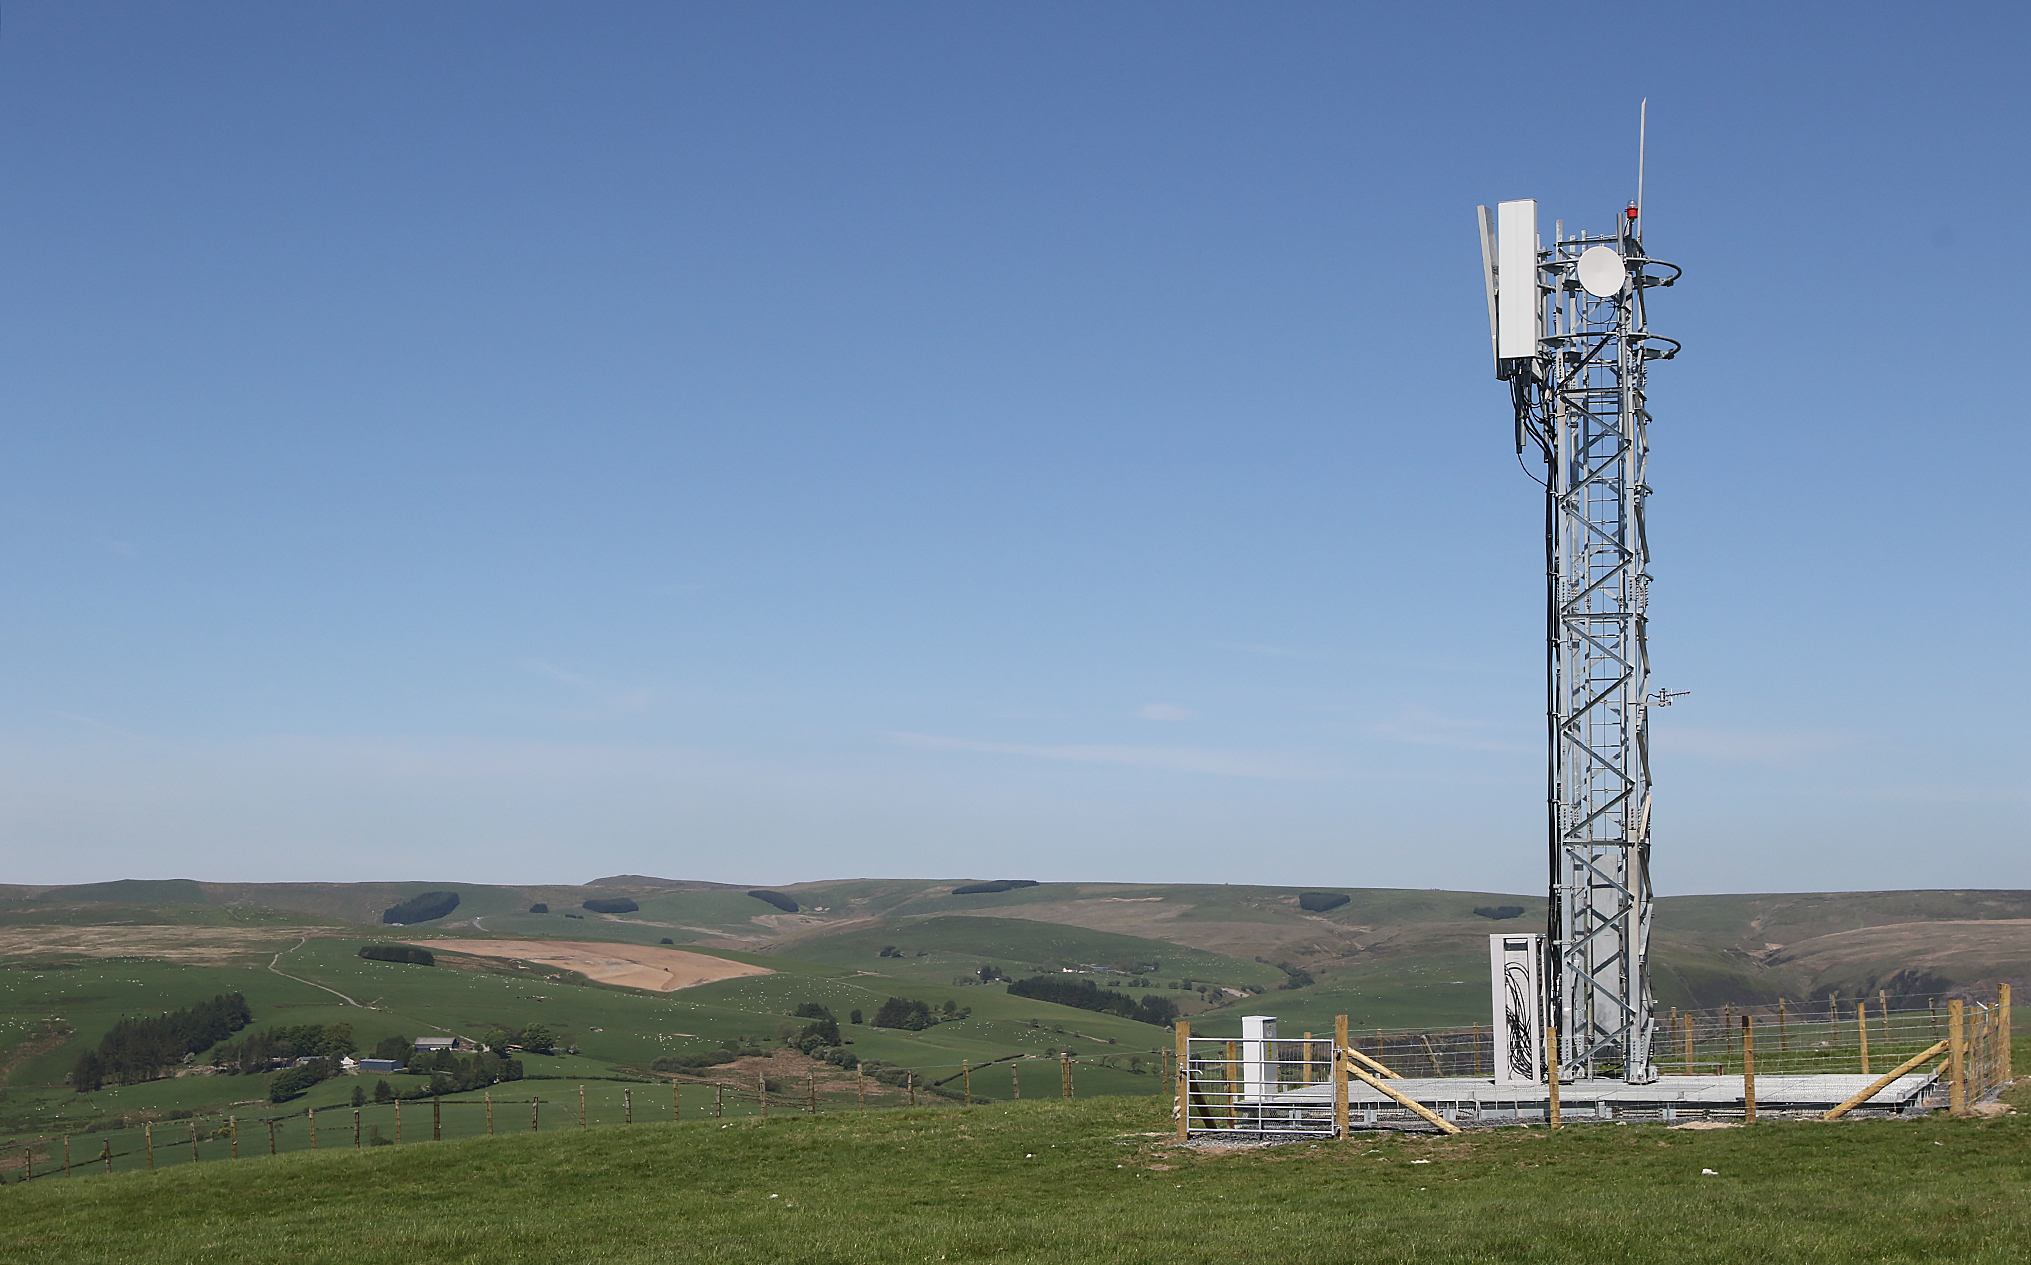 O2 brings 4G to 24 rural communities in Wales